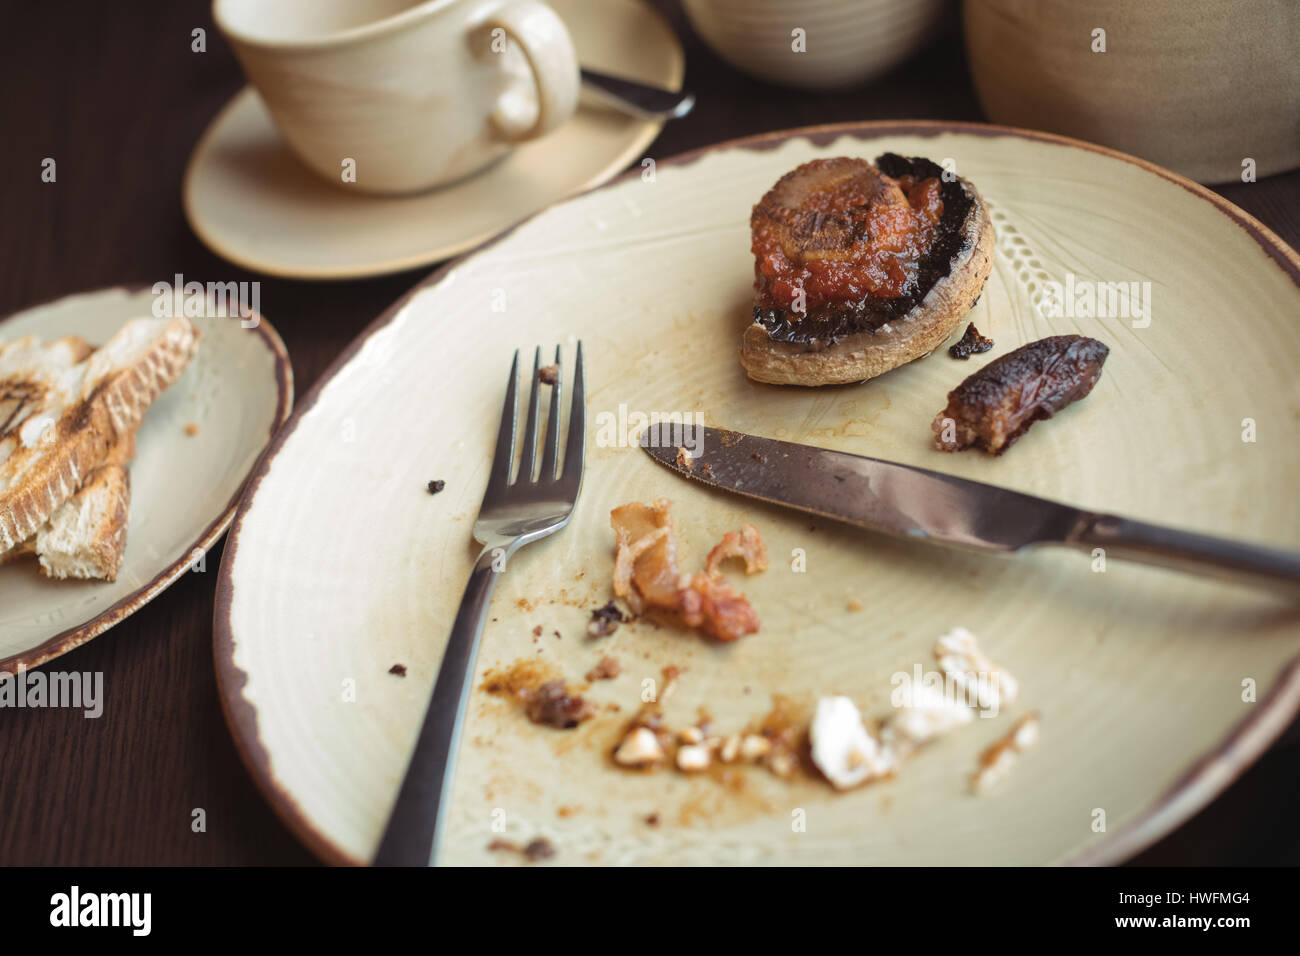 Nahaufnahme von übrig gebliebenen Frühstück in Platte am CafÃƒÂ © Stockfoto